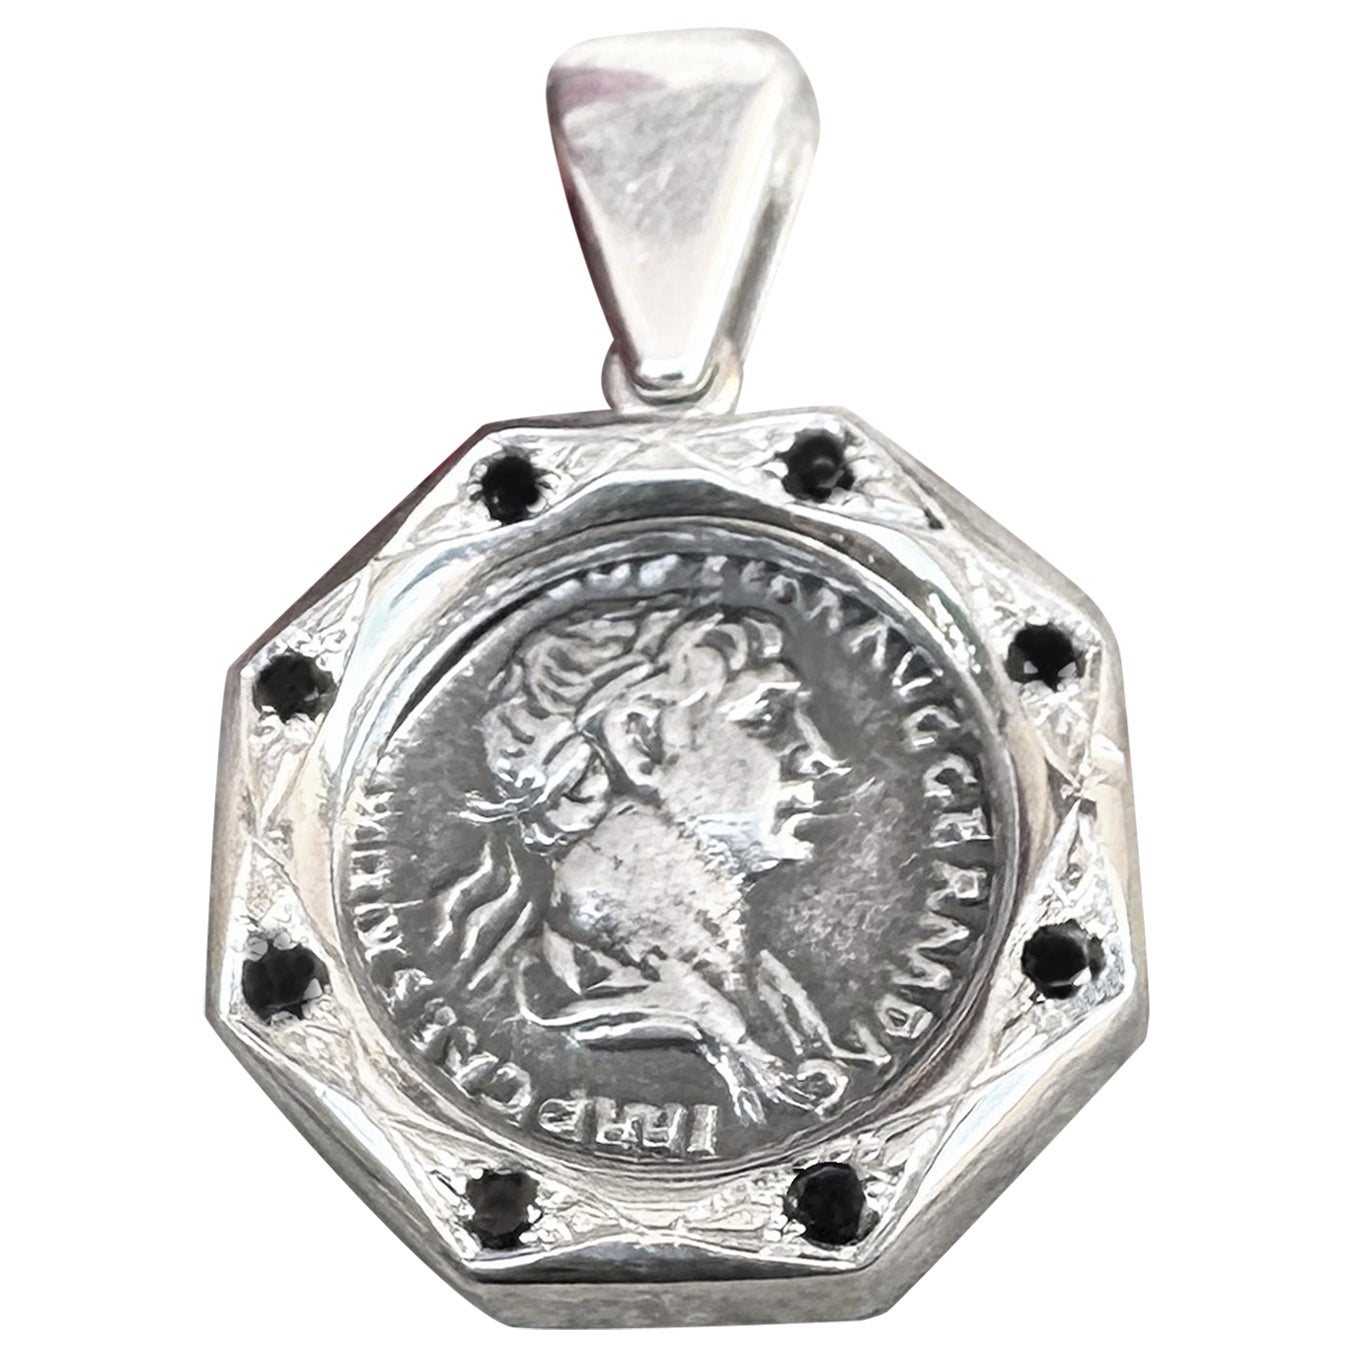 Cet exquis pendentif en argent met en valeur une véritable pièce de monnaie romaine en argent datant du IIe siècle ADS, représentant l'empereur Trajan au recto et le dieu Marli au verso. Le pendentif est rehaussé de 8 diamants noirs de 0,30 KT, ce